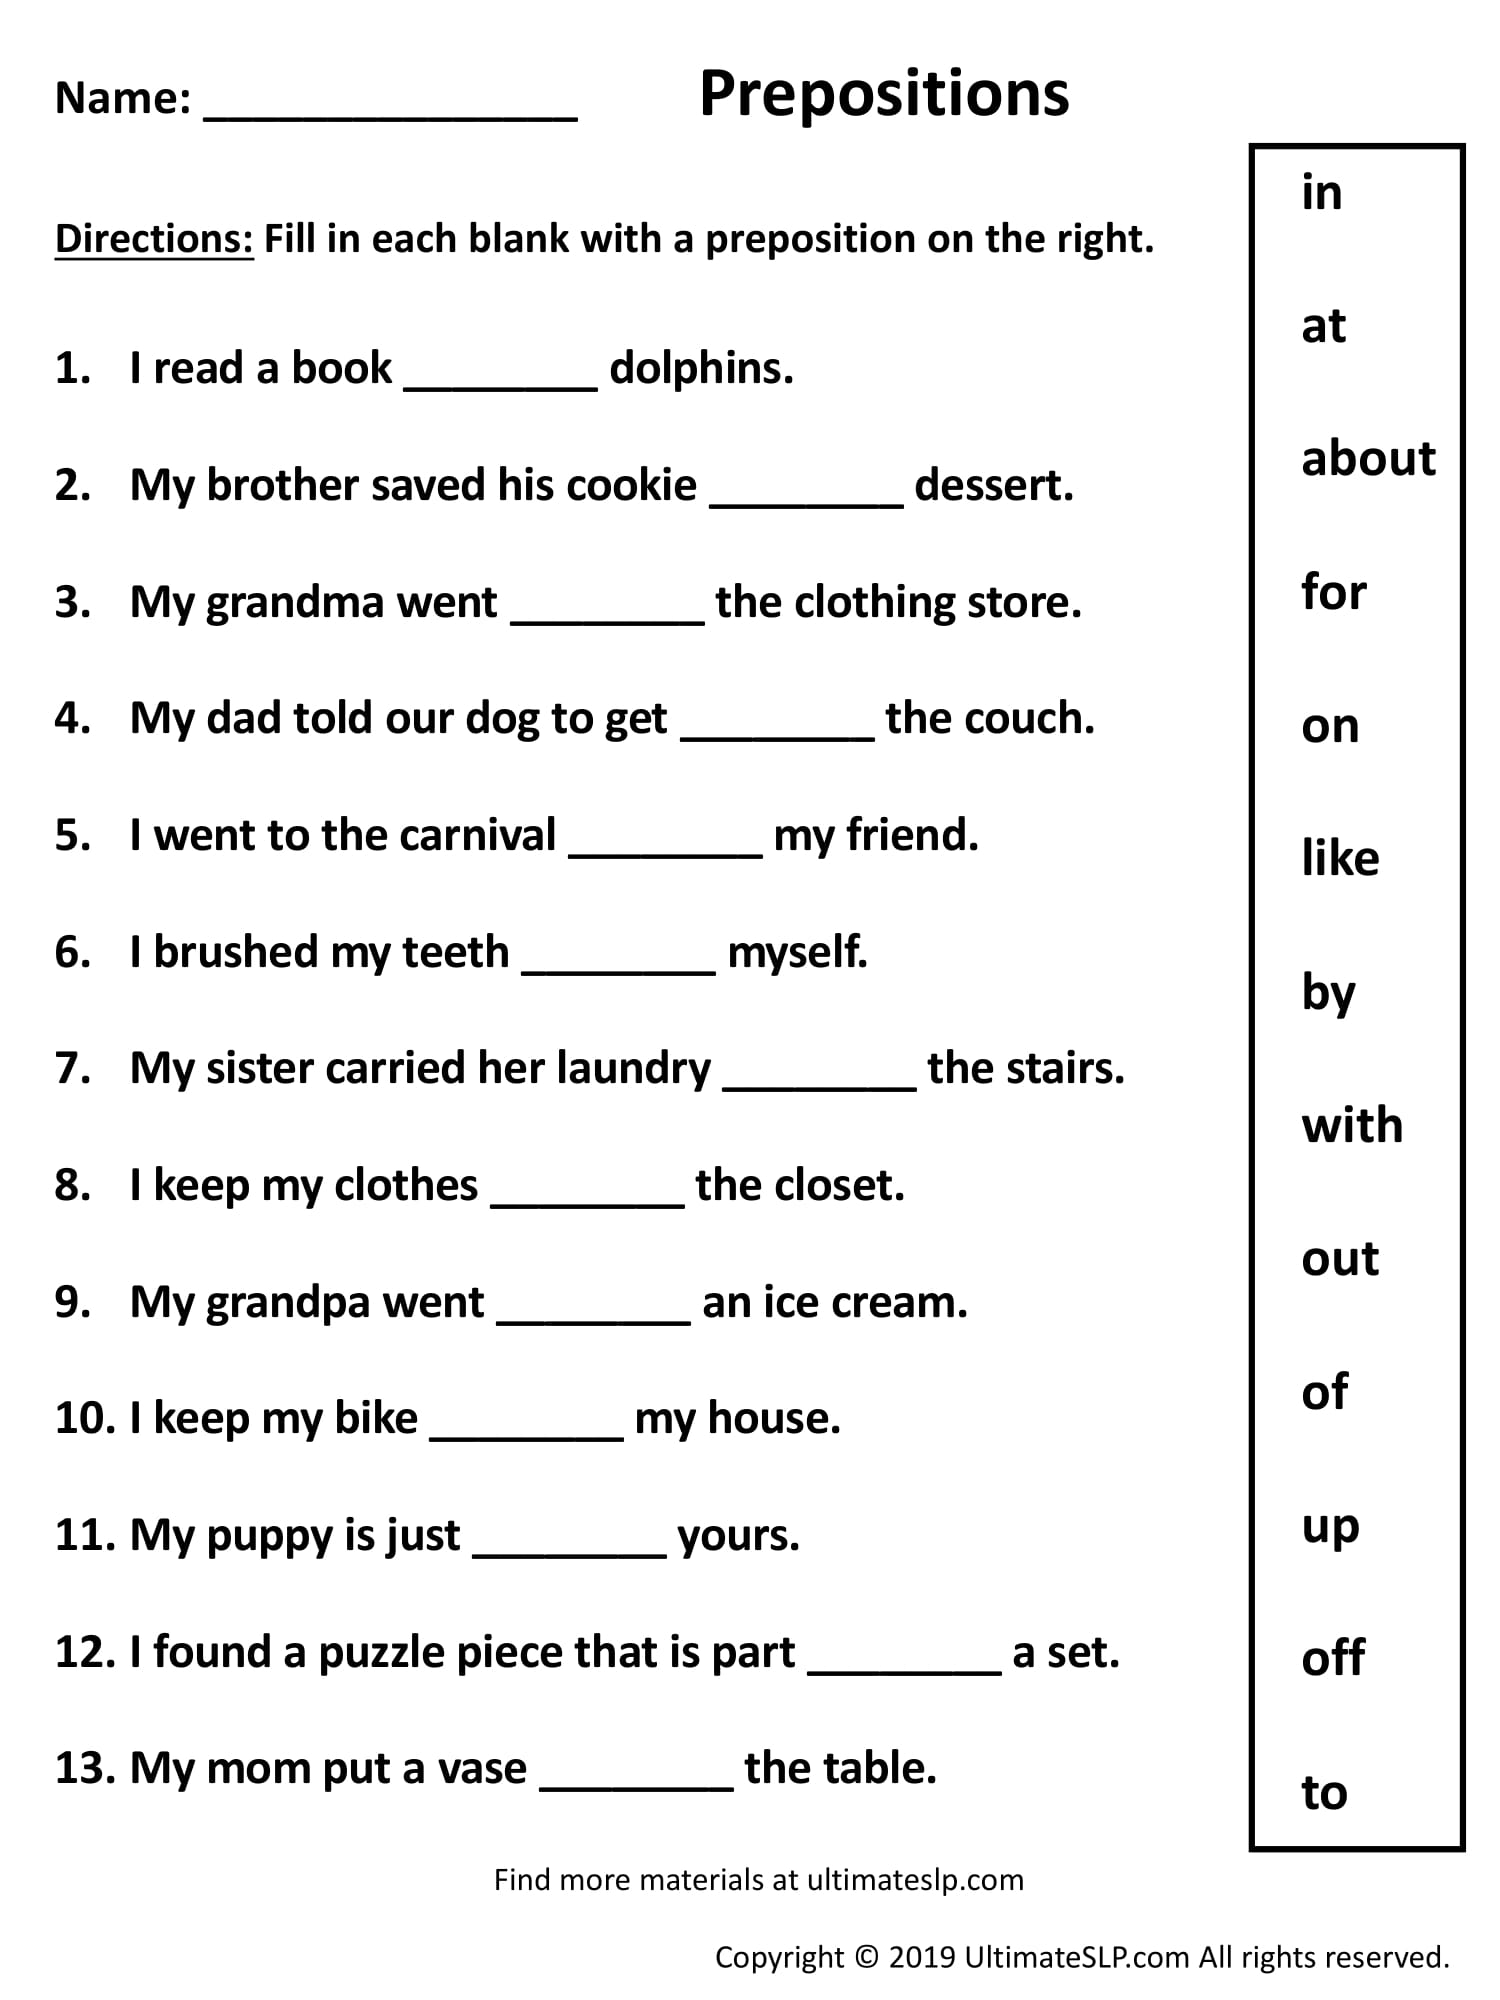 prepositions-worksheet-class-10